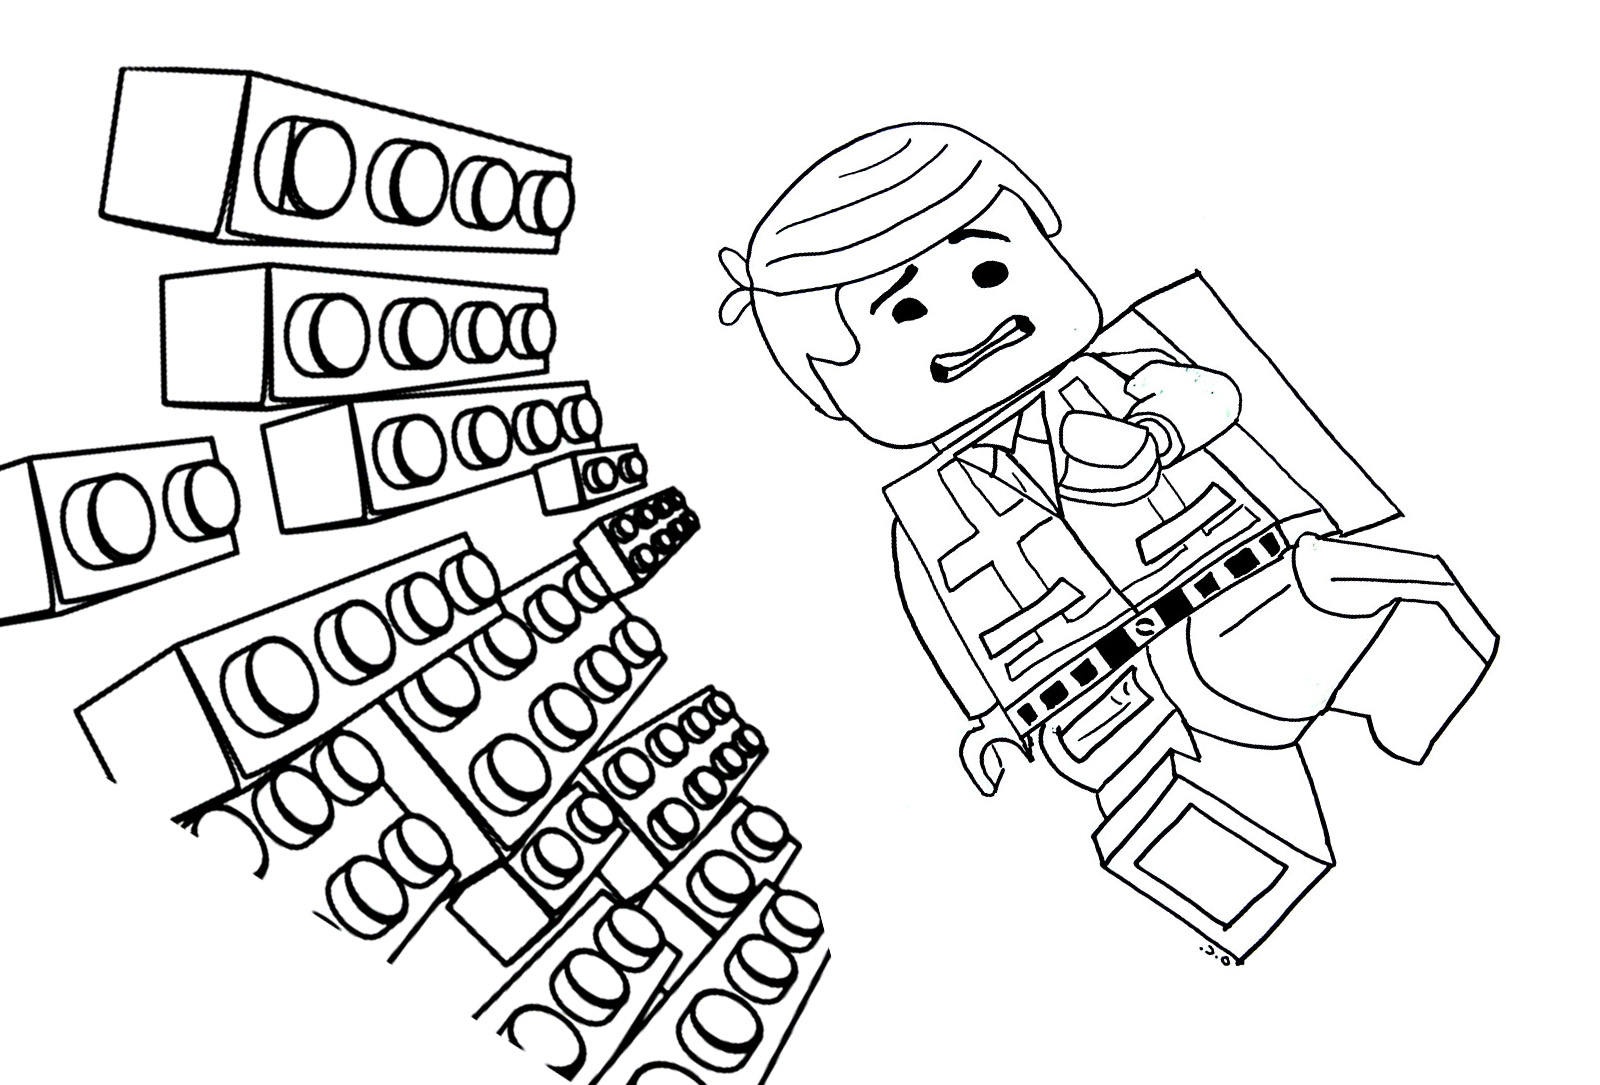 Desenho de Emmet, o herói da LEGO MOVIE, com tijolos a vir na sua direcção